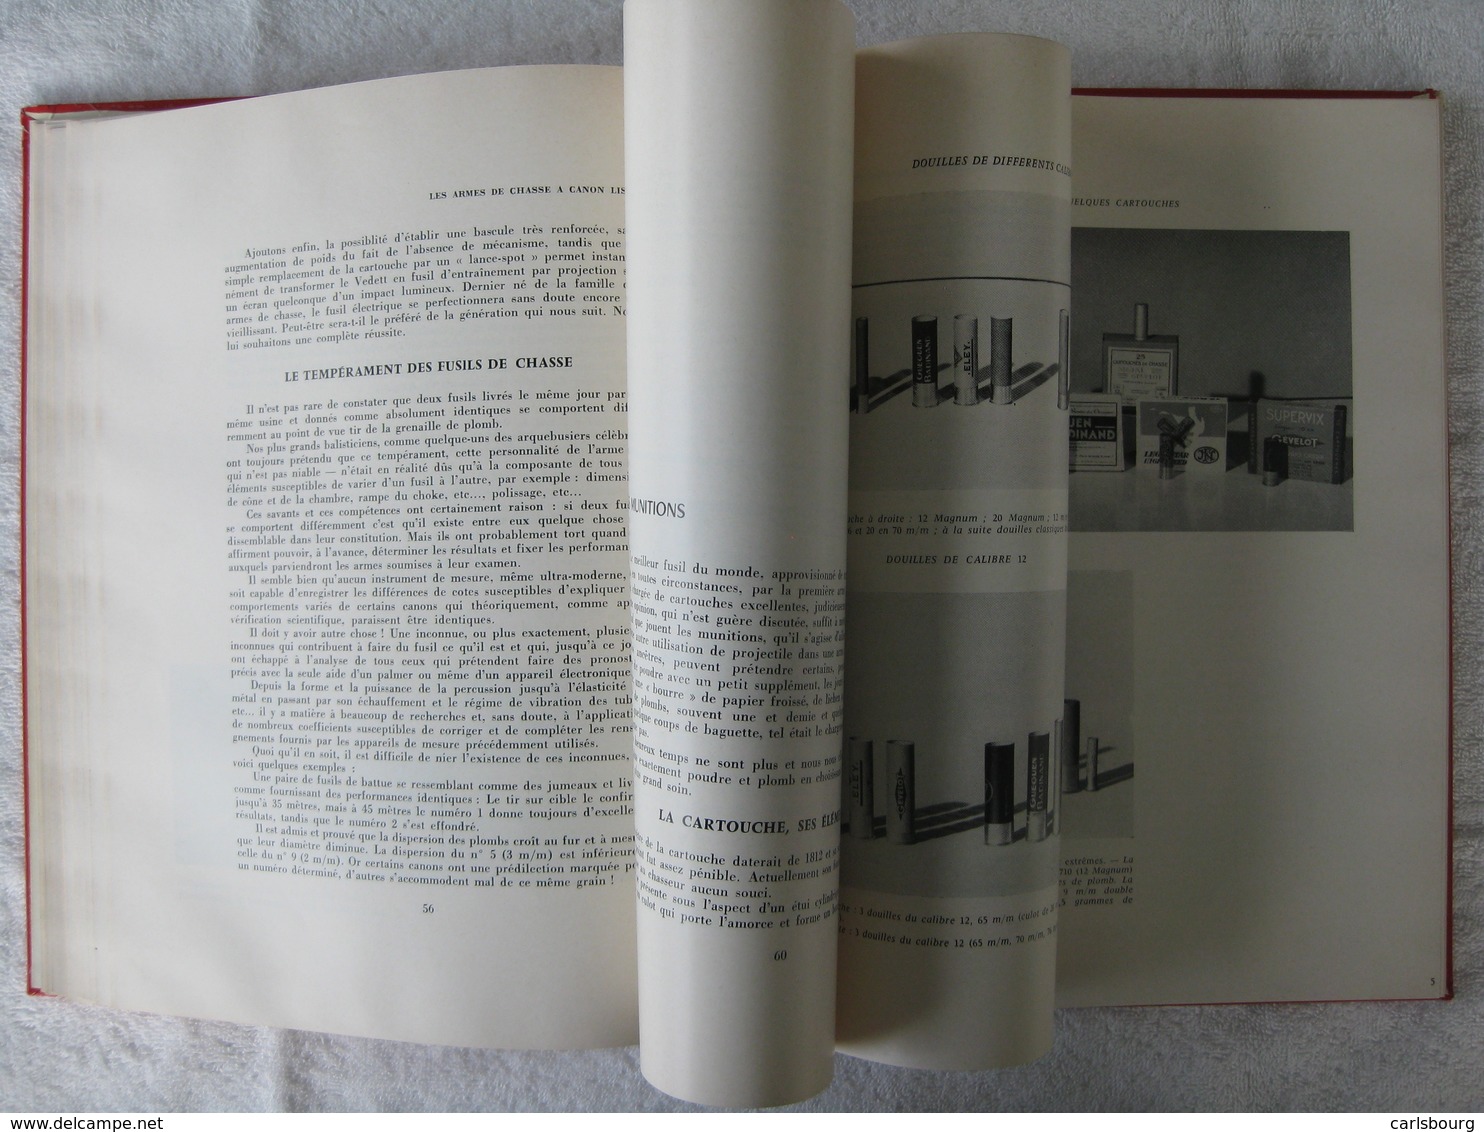 Chasse – Pierre Fonteneau – édition 1966 – peu courant rare introuvable